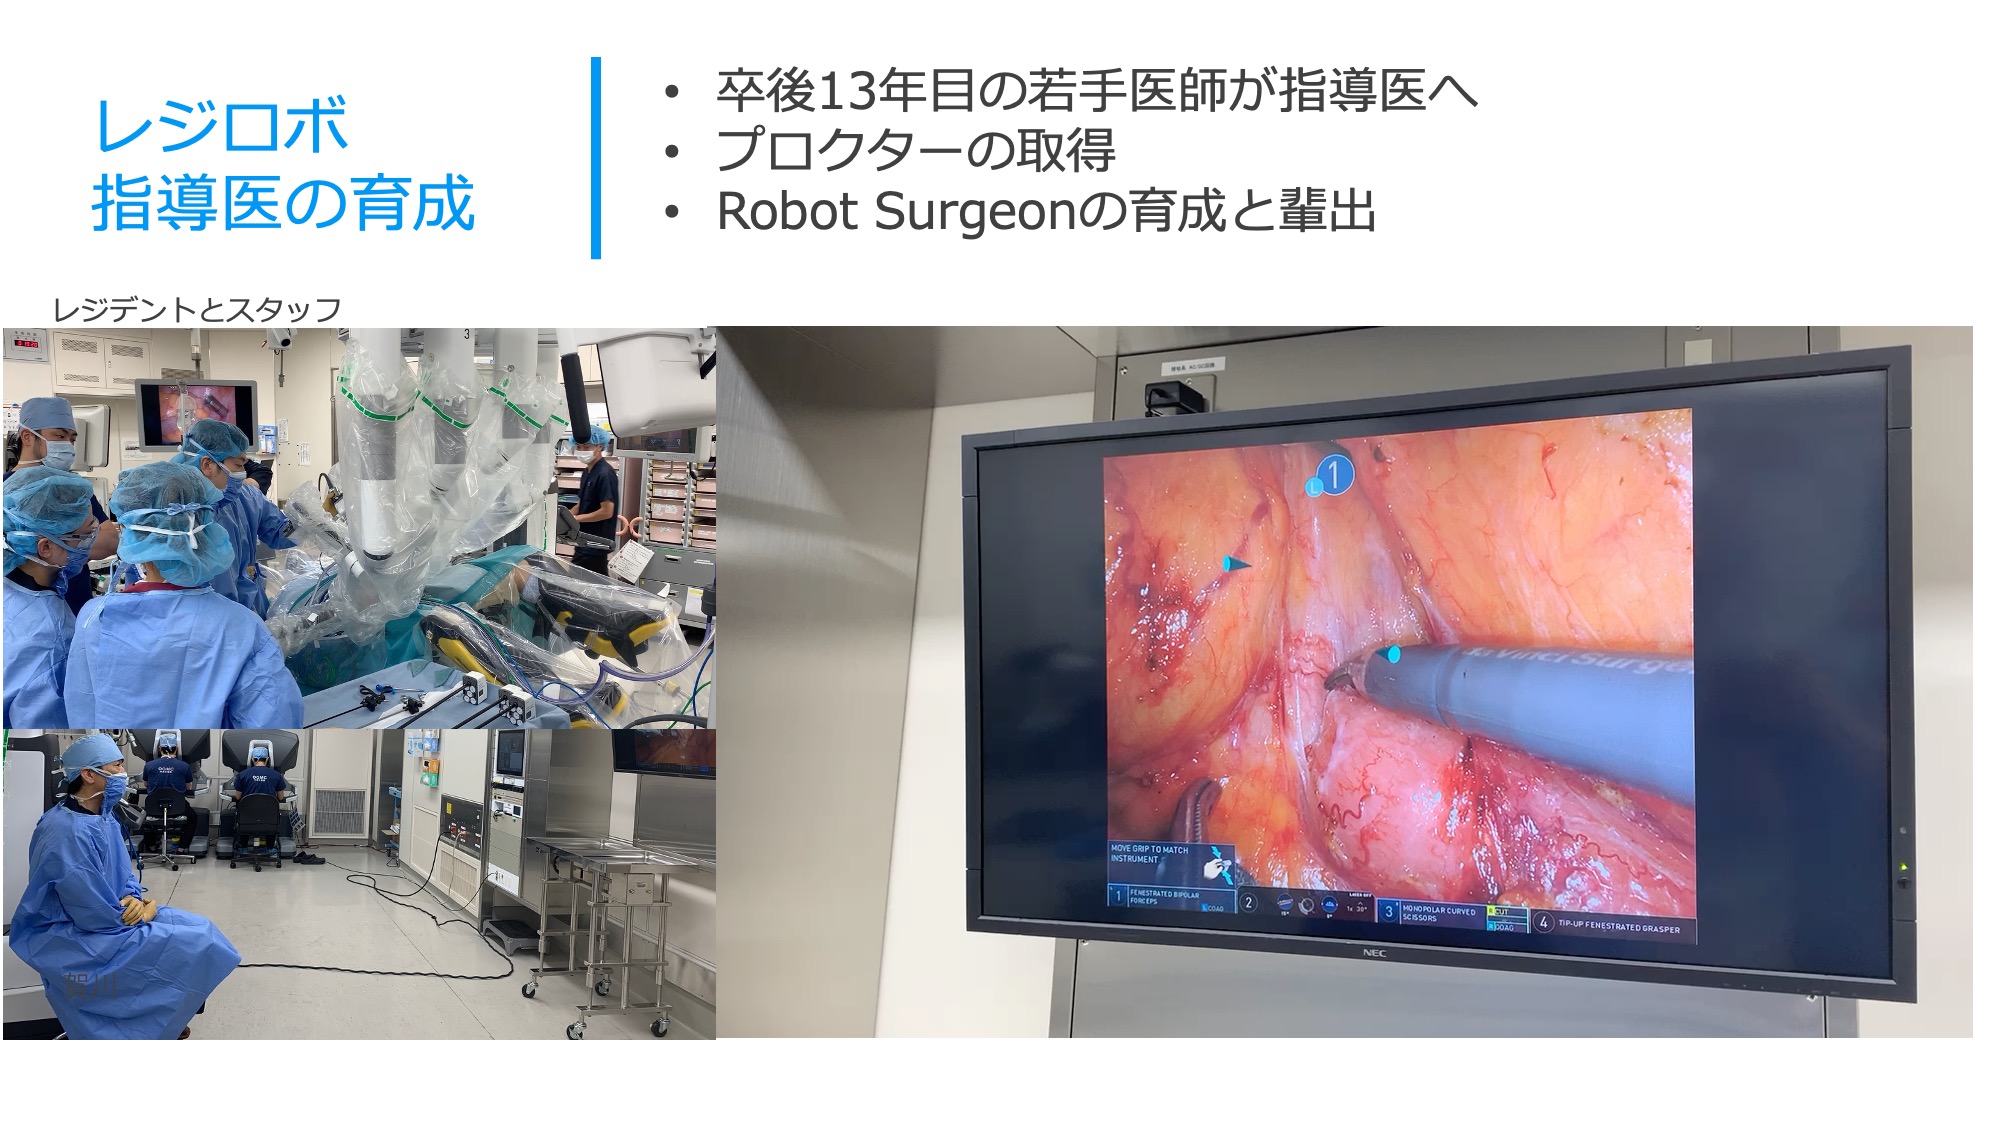 大阪急性期・総合医療センター　消化器外科　レジデント　ロボット手術　全大腸癌がロボット手術　教育　レジロボ 第35回日本内視鏡外科学会総会 The 35th Annual Meeting of the Japan Society for Endoscopic Surgery 【同時開催】 アジアロボット・内視鏡外科学会（ACRLS 2022） Asian-Pacific Congress of Robotic Laparoscopic Surgery 2022 会期 2022年12月8日（木）～10日（土） 会場 ポートメッセなごや（名古屋市国際展示場） 名古屋駅からあおなみ線で約30分 アクセス 会長 宇山 一朗（藤田医科大学 先端ロボット・内視鏡手術学講座） メインテーマ Create disruptive innovation! ハードルを踏み倒して進め！ 主催事務局 藤田医科大学医学部 総合消化器外科学講座 〒470-1192 愛知県豊明市沓掛町田楽ヶ窪1番地98 運営準備室 日本コンベンションサービス株式会社 〒100-0013 東京都千代田区霞が関1-4-2 大同生命霞が関ビル14階 Tel:03-3508-1214 E-mail: jses35@convention.co.jp